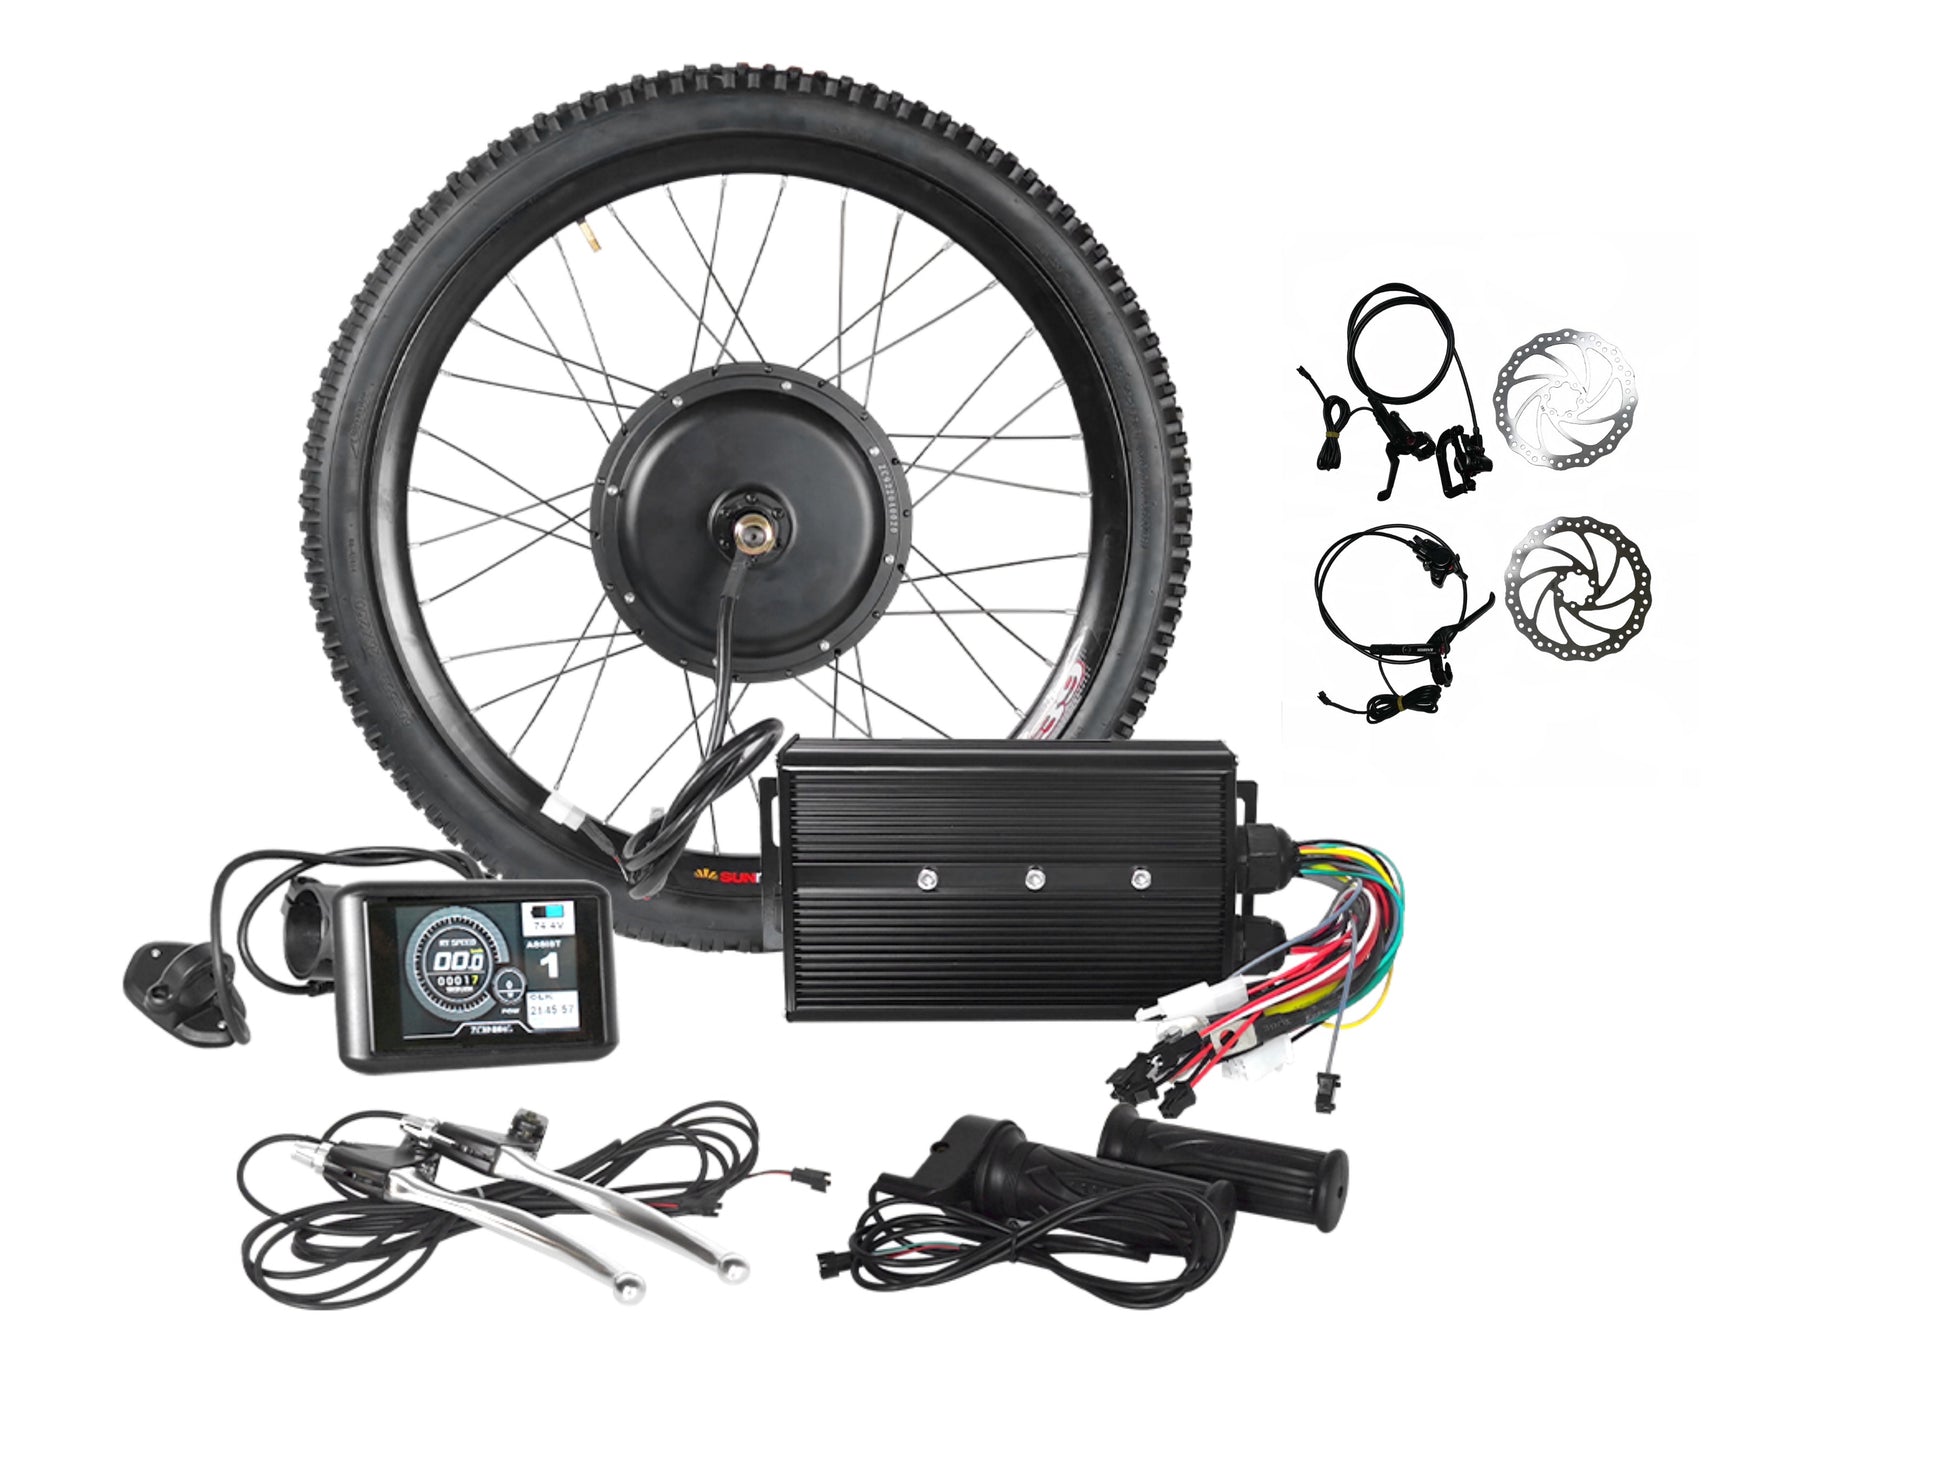 3000W electric bike kit with hydraulic disc brake